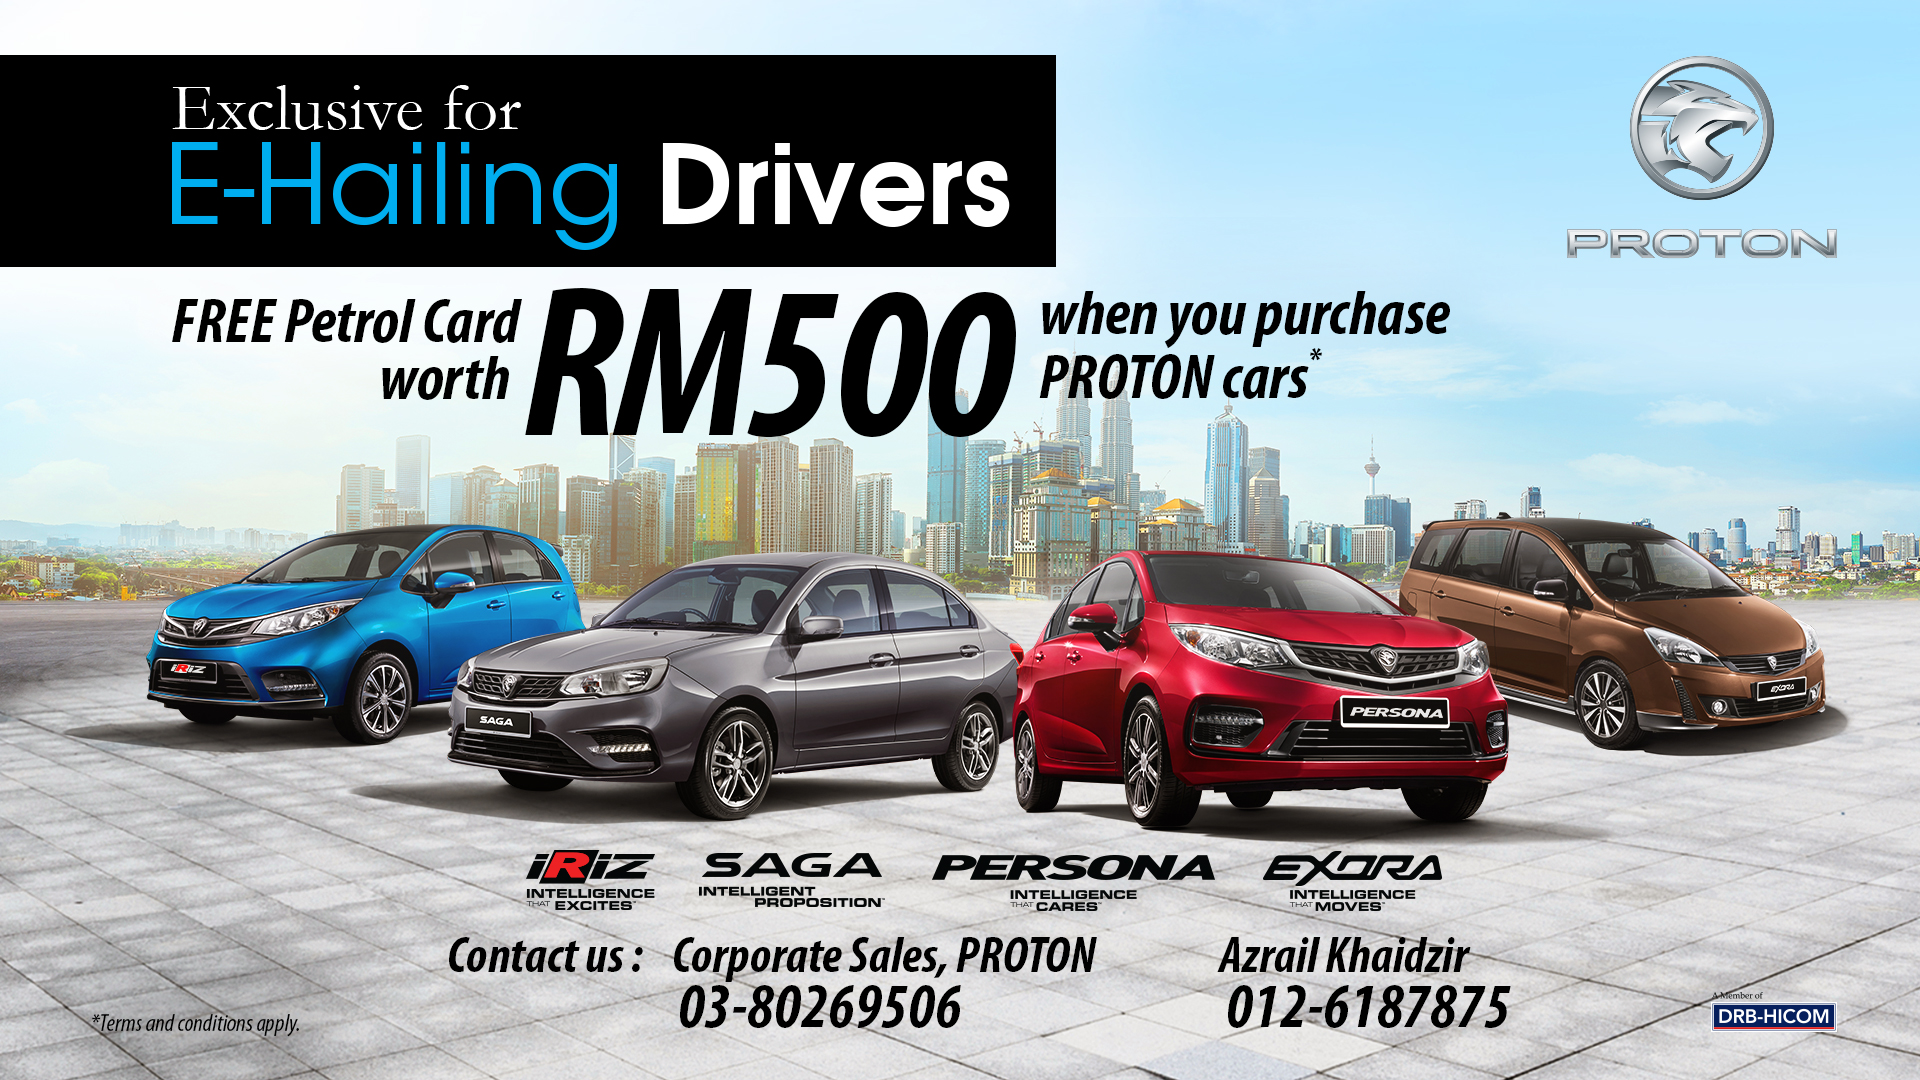 Proton tawar kad minyak RM500 percuma jika anda beli kereta untuk tujuan e-hailing, sehingga 31 Dis ini